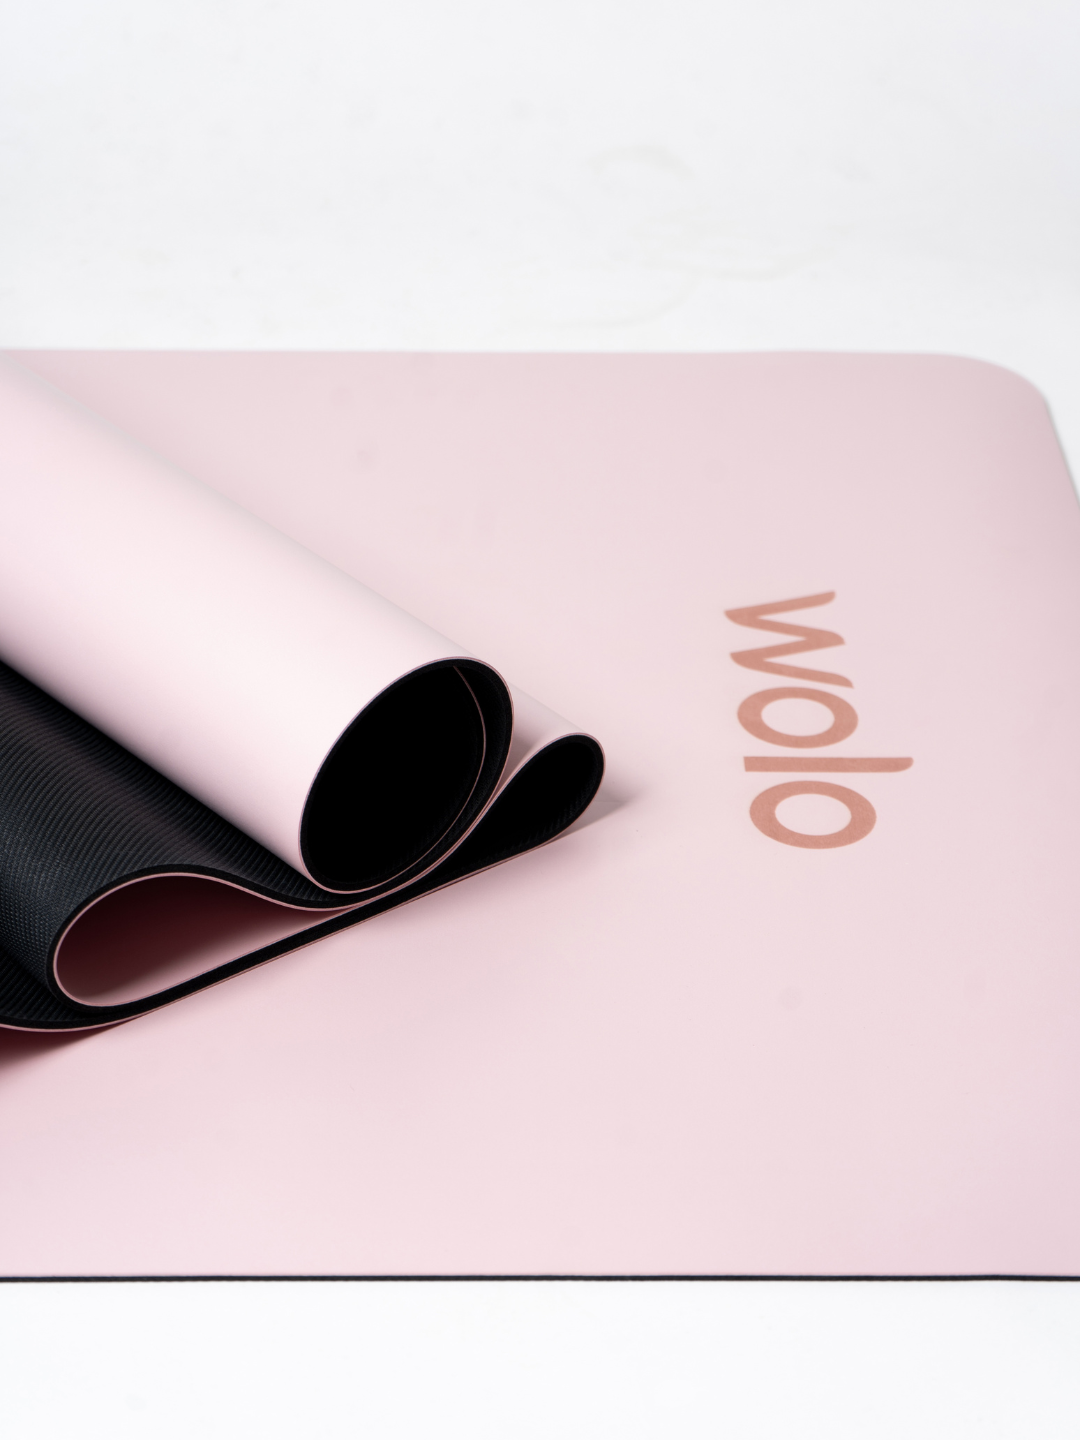 Close-up view of a Sakura pink yoga mat